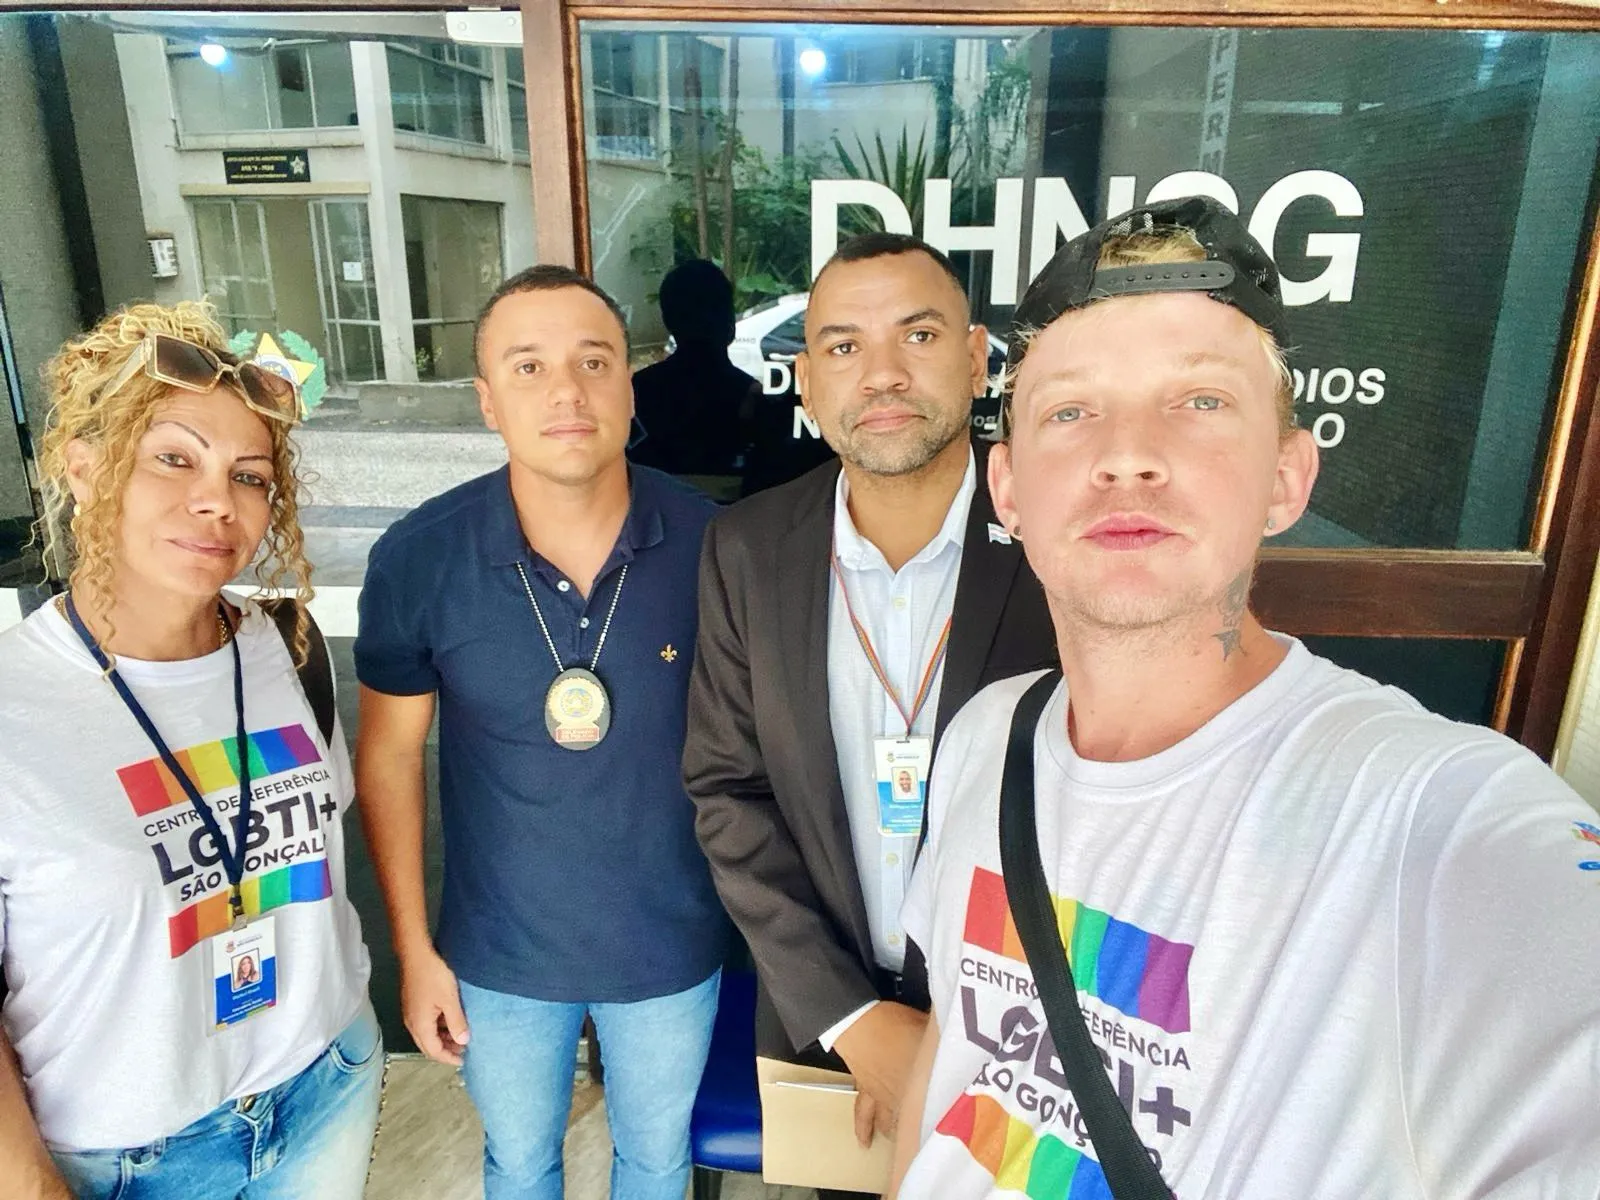 Representantes do Centro de Referência LGBTI+ de São Gonçalo foram à DHNSG